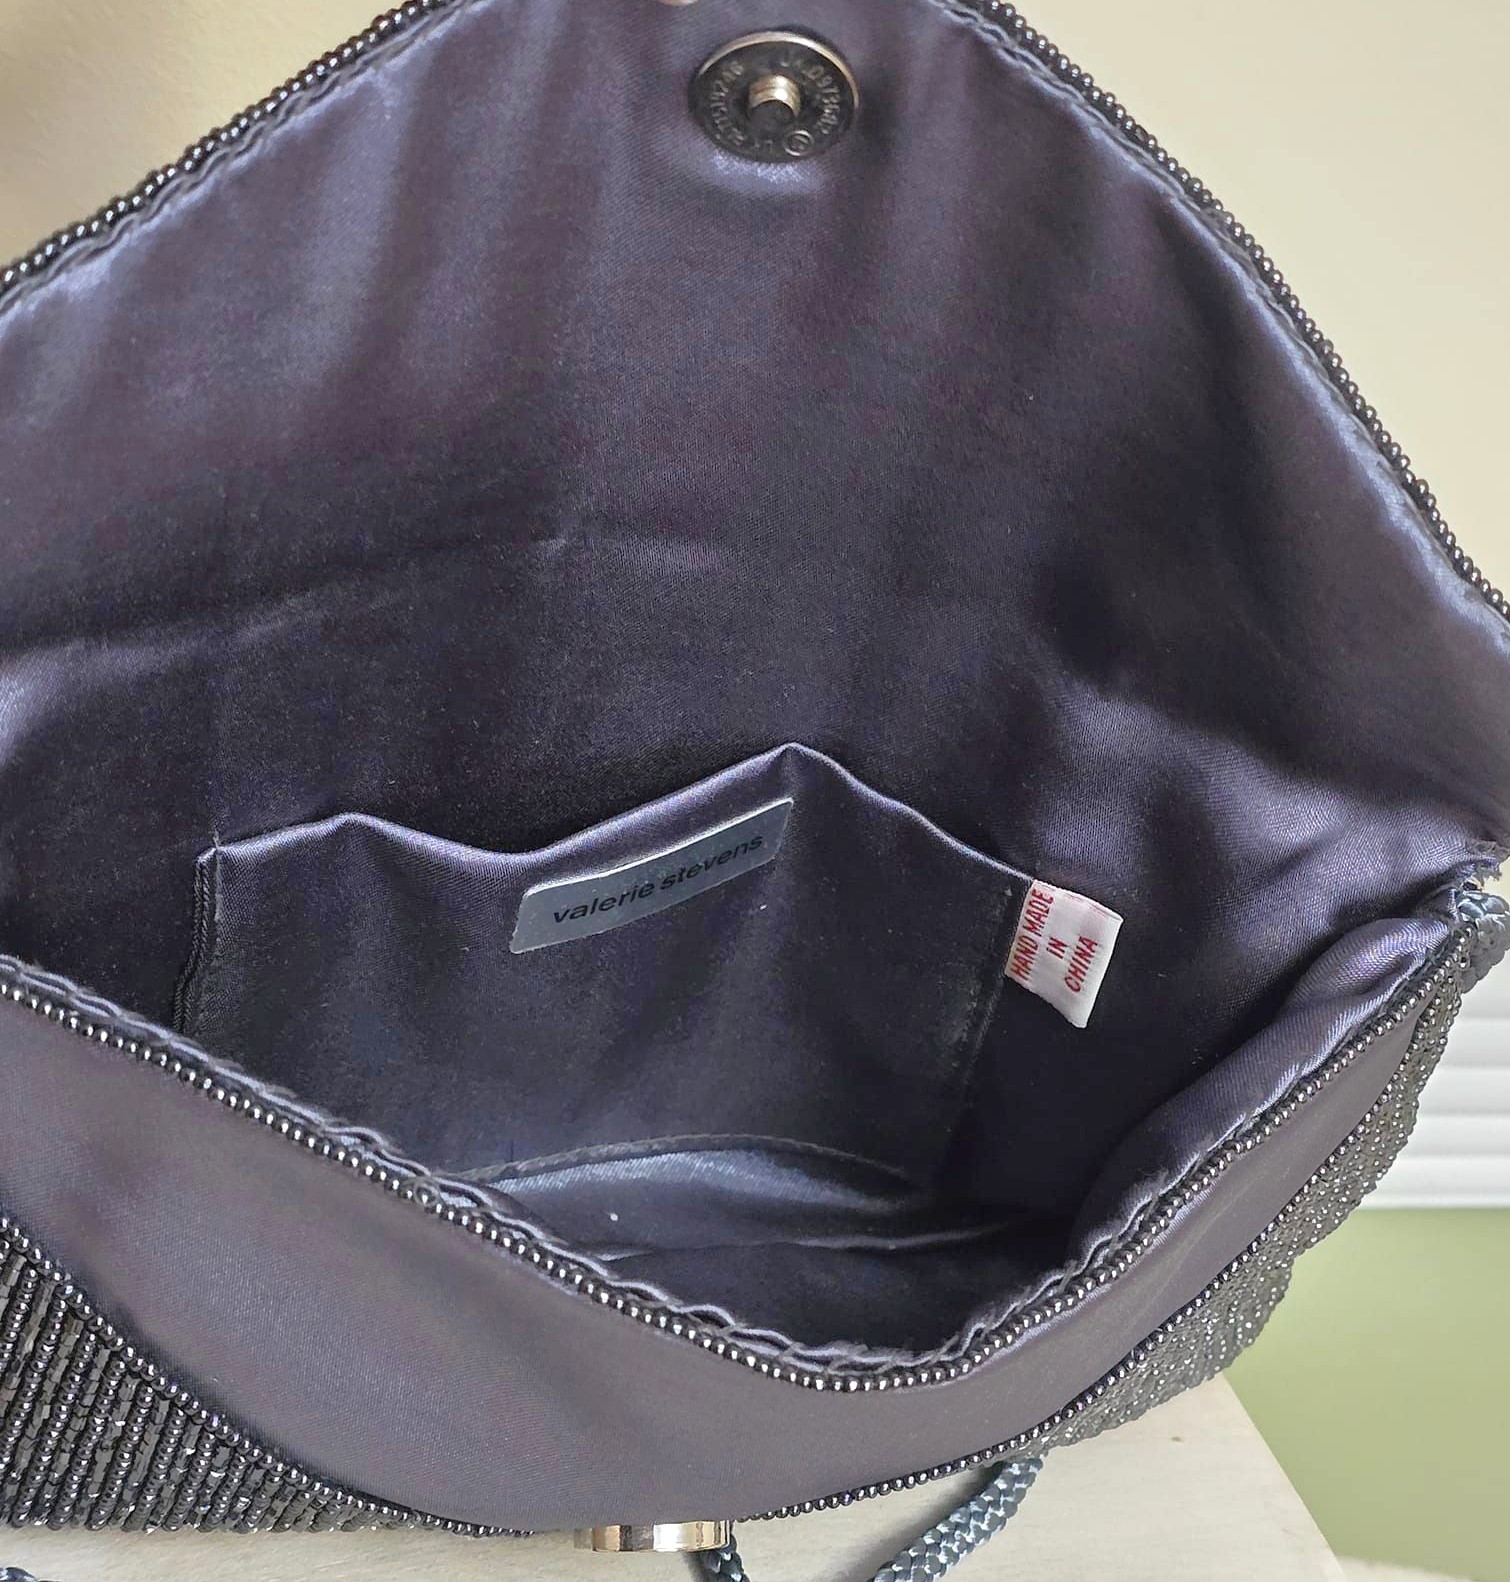 Beaded handbag, gray beaded bag, designer Valerie Stevens